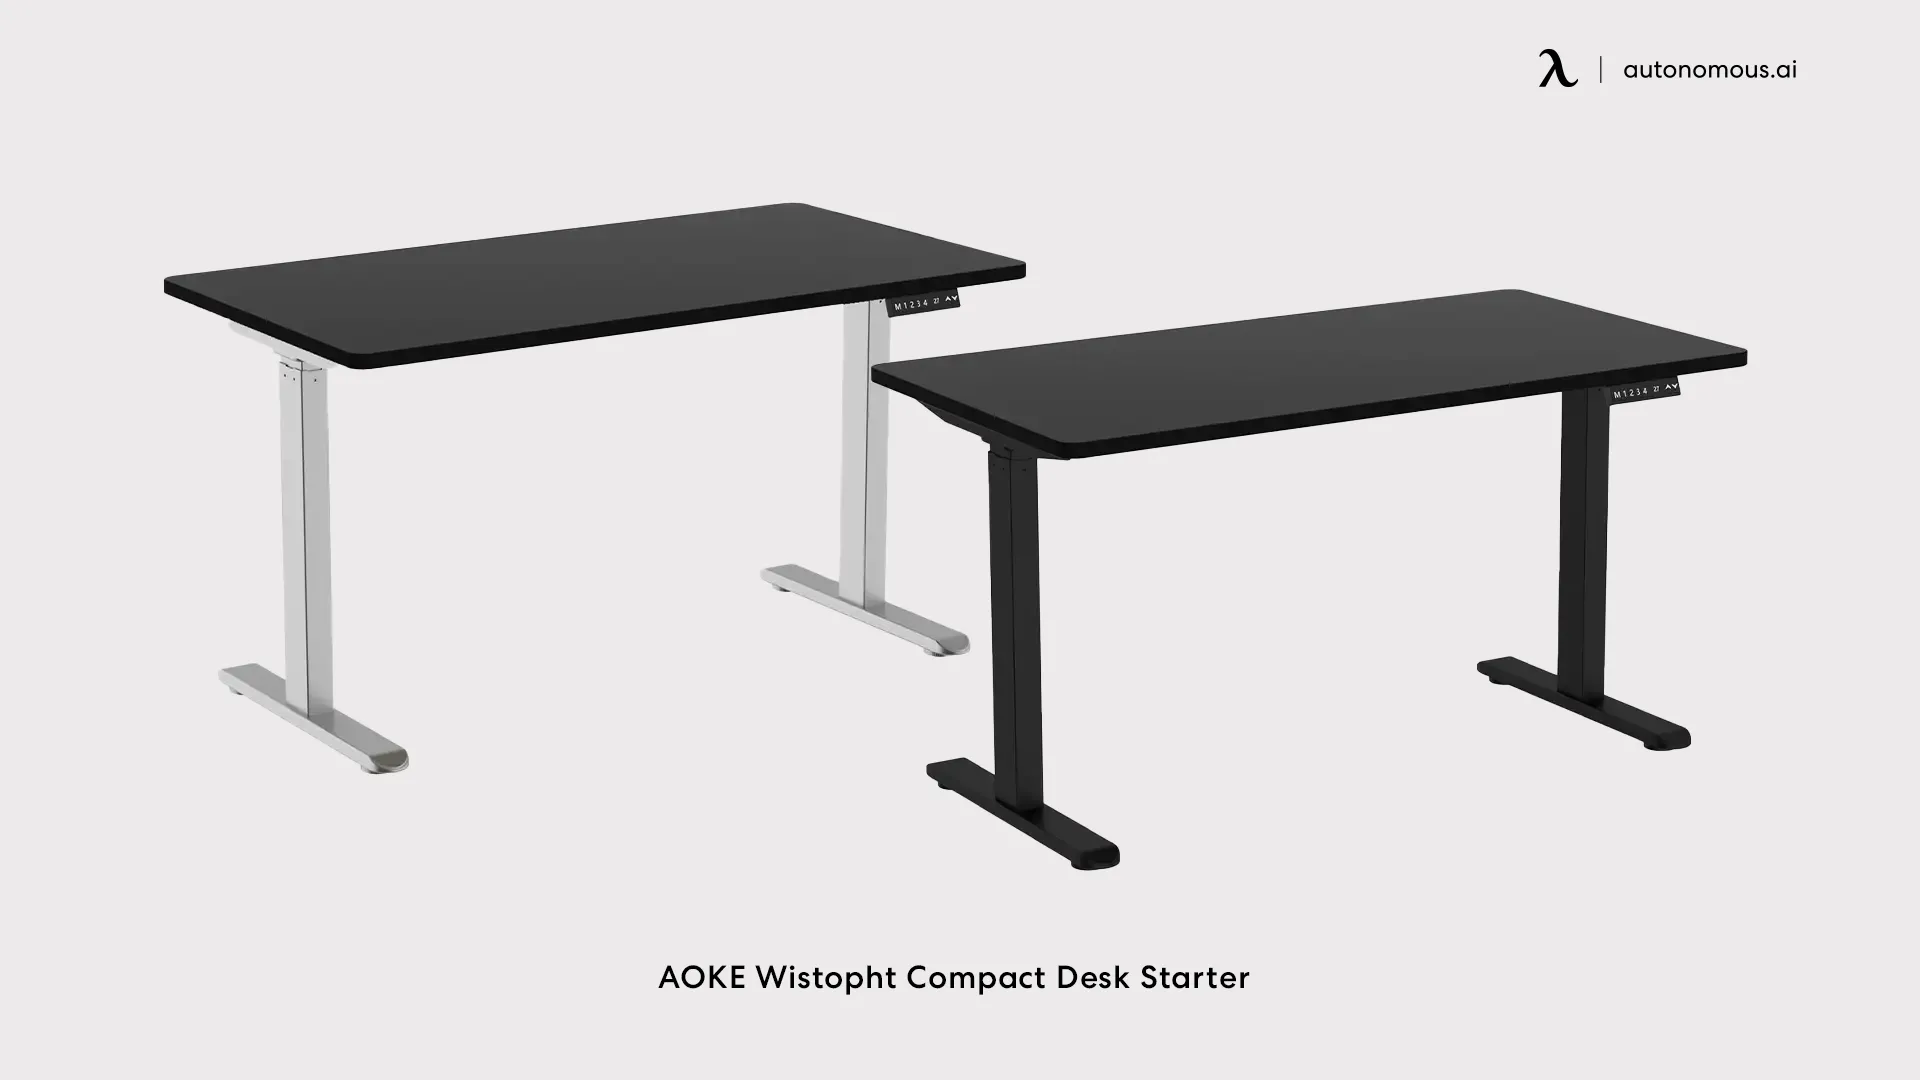 AOKE Wistopht Compact Desk Starter